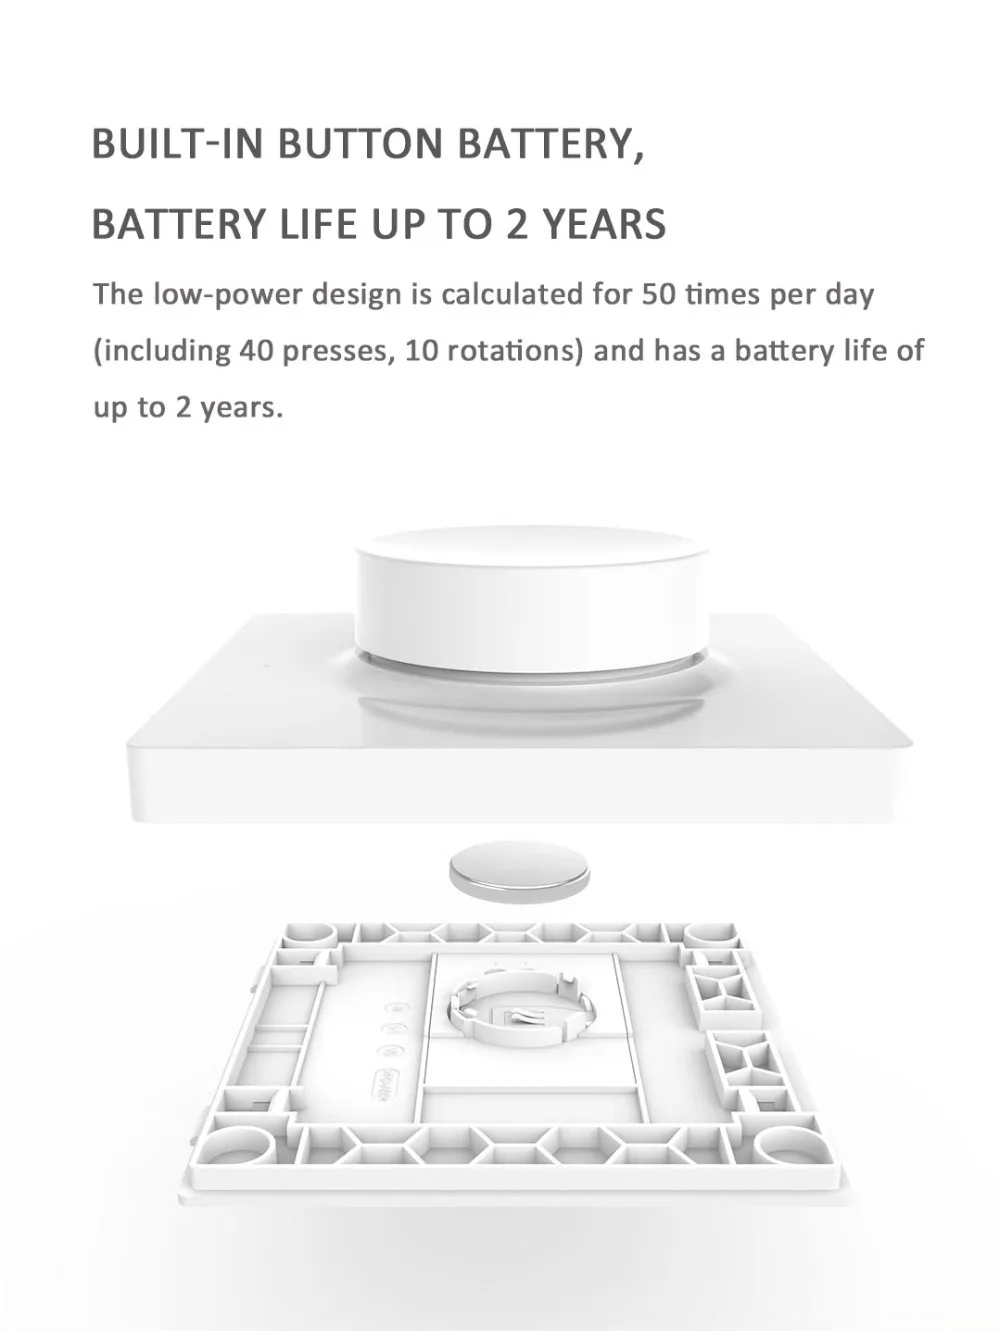 Xiaomi Mijia Yee светильник умный диммер Интеллектуальный регулировочный светильник с выключением все еще работает 5 в 1 умный переключатель управления